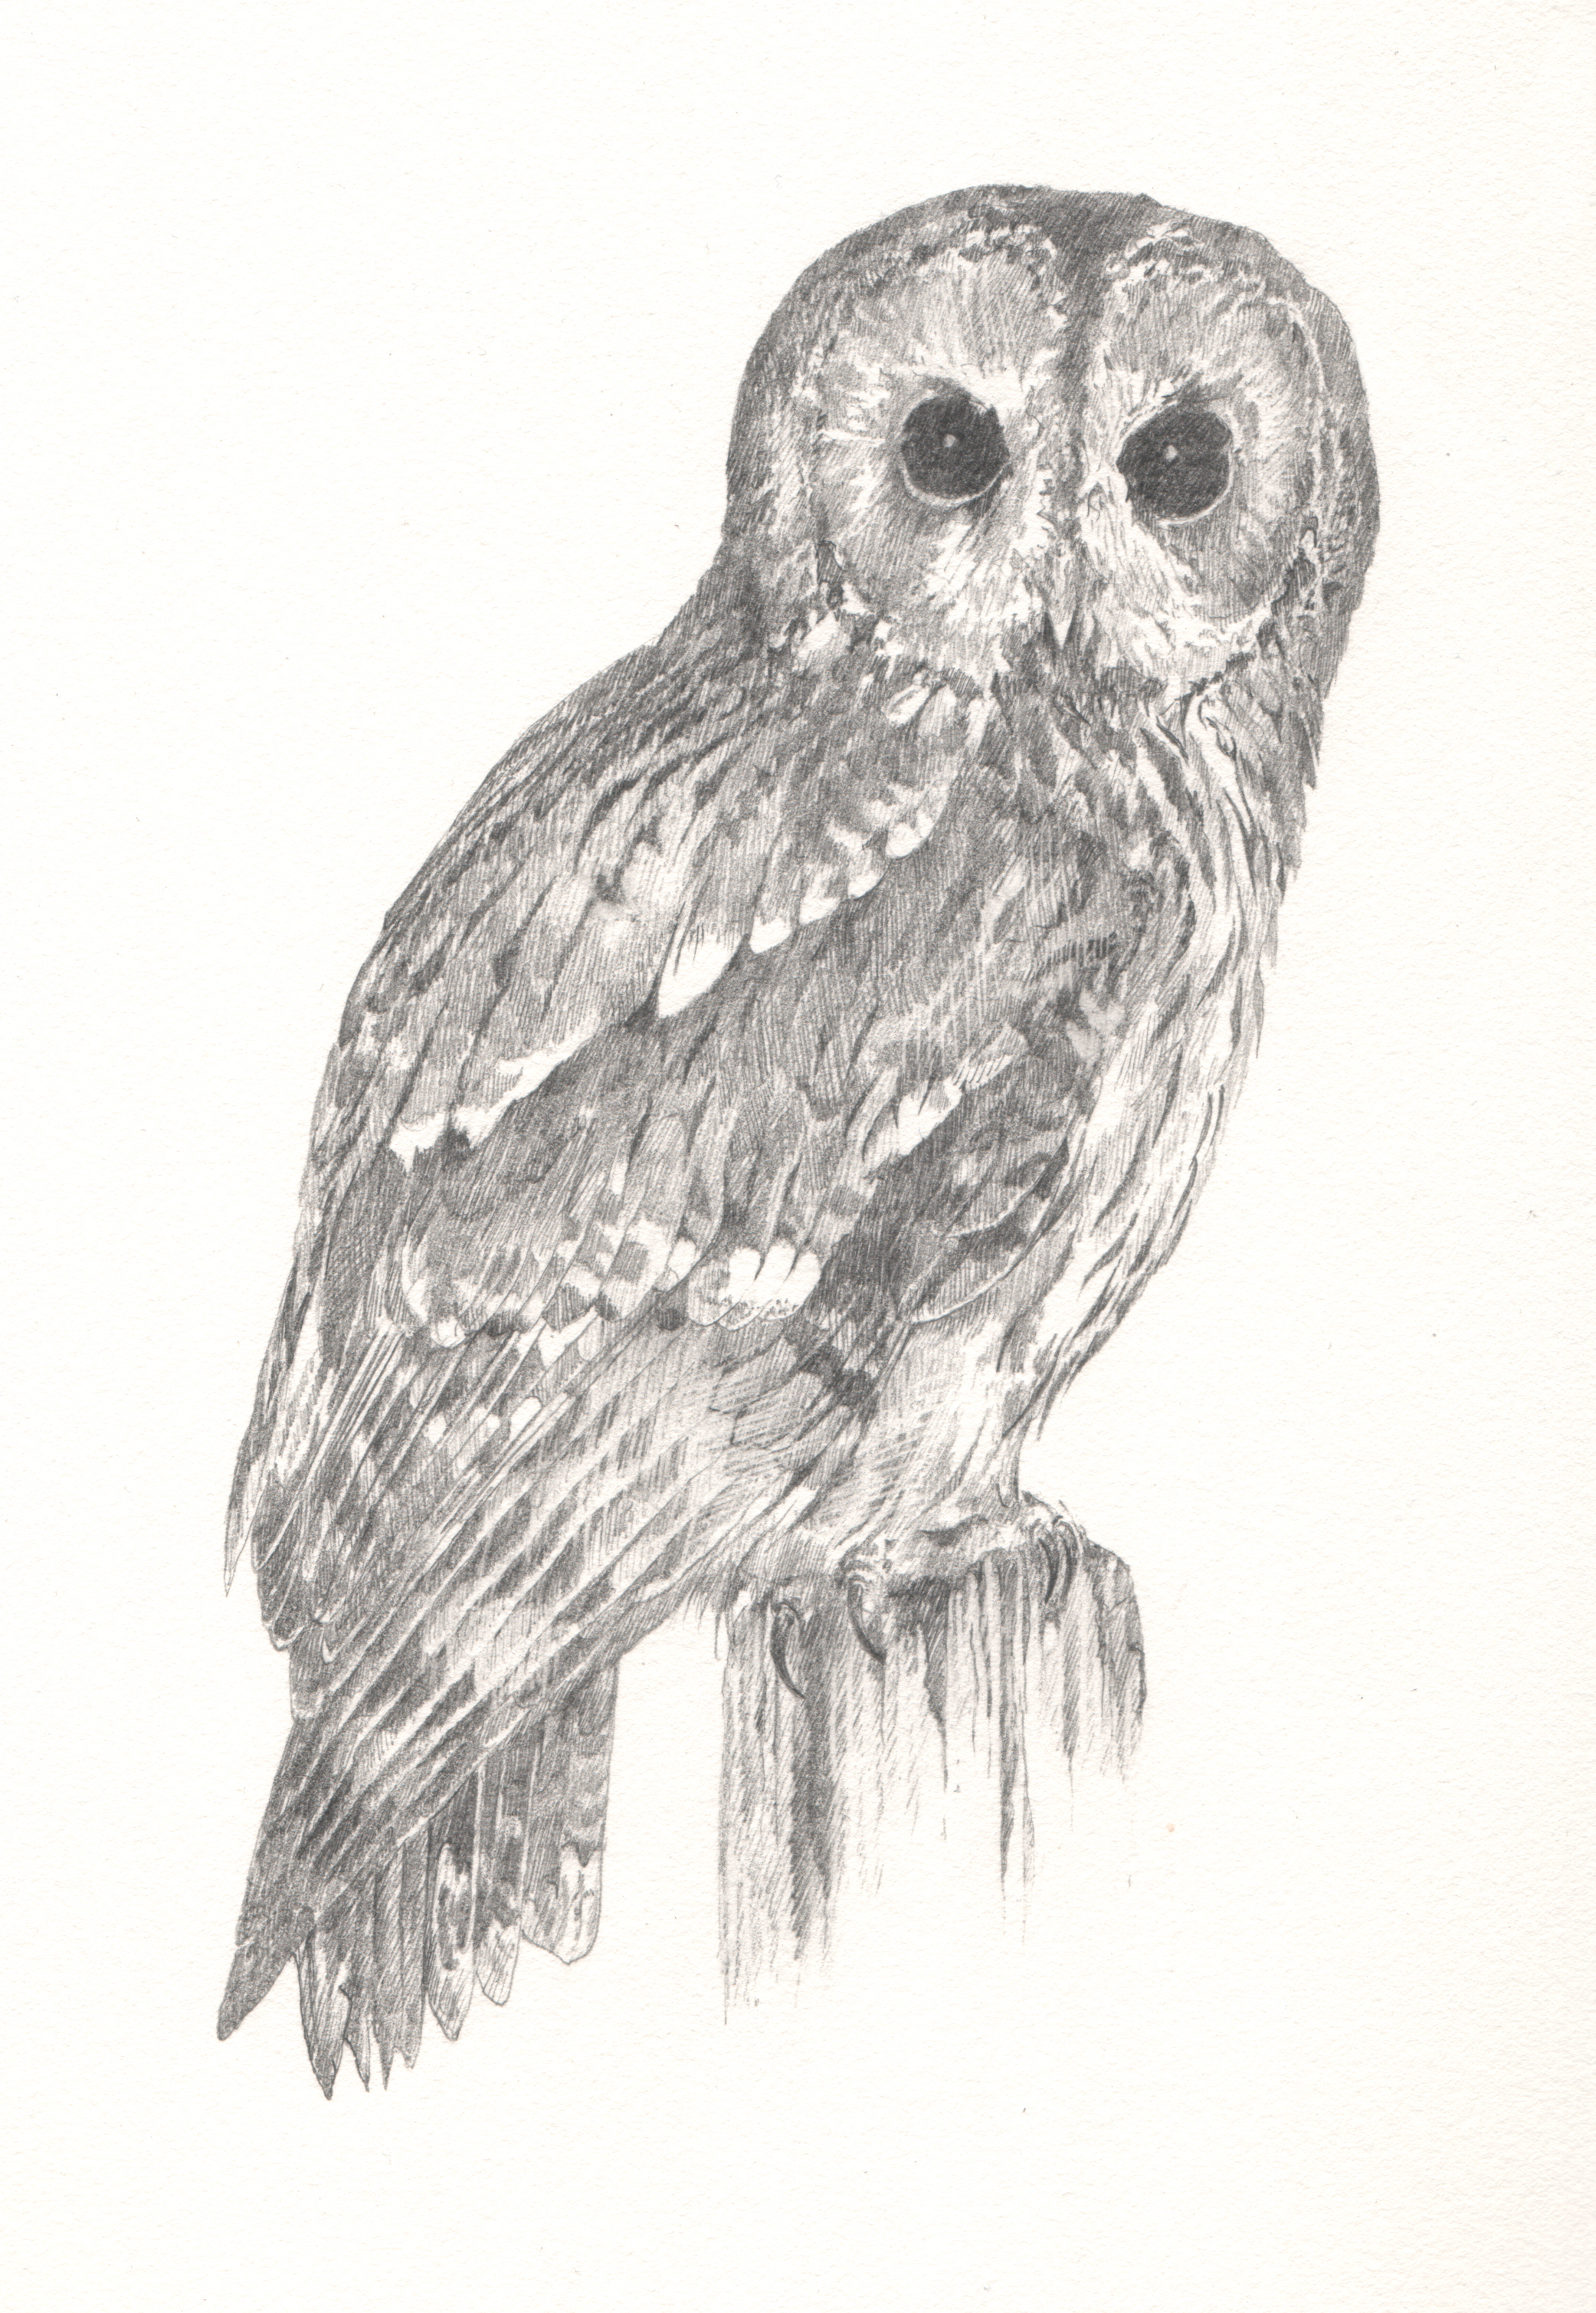  Tawny Owl - Study for author Miriam Darlington 